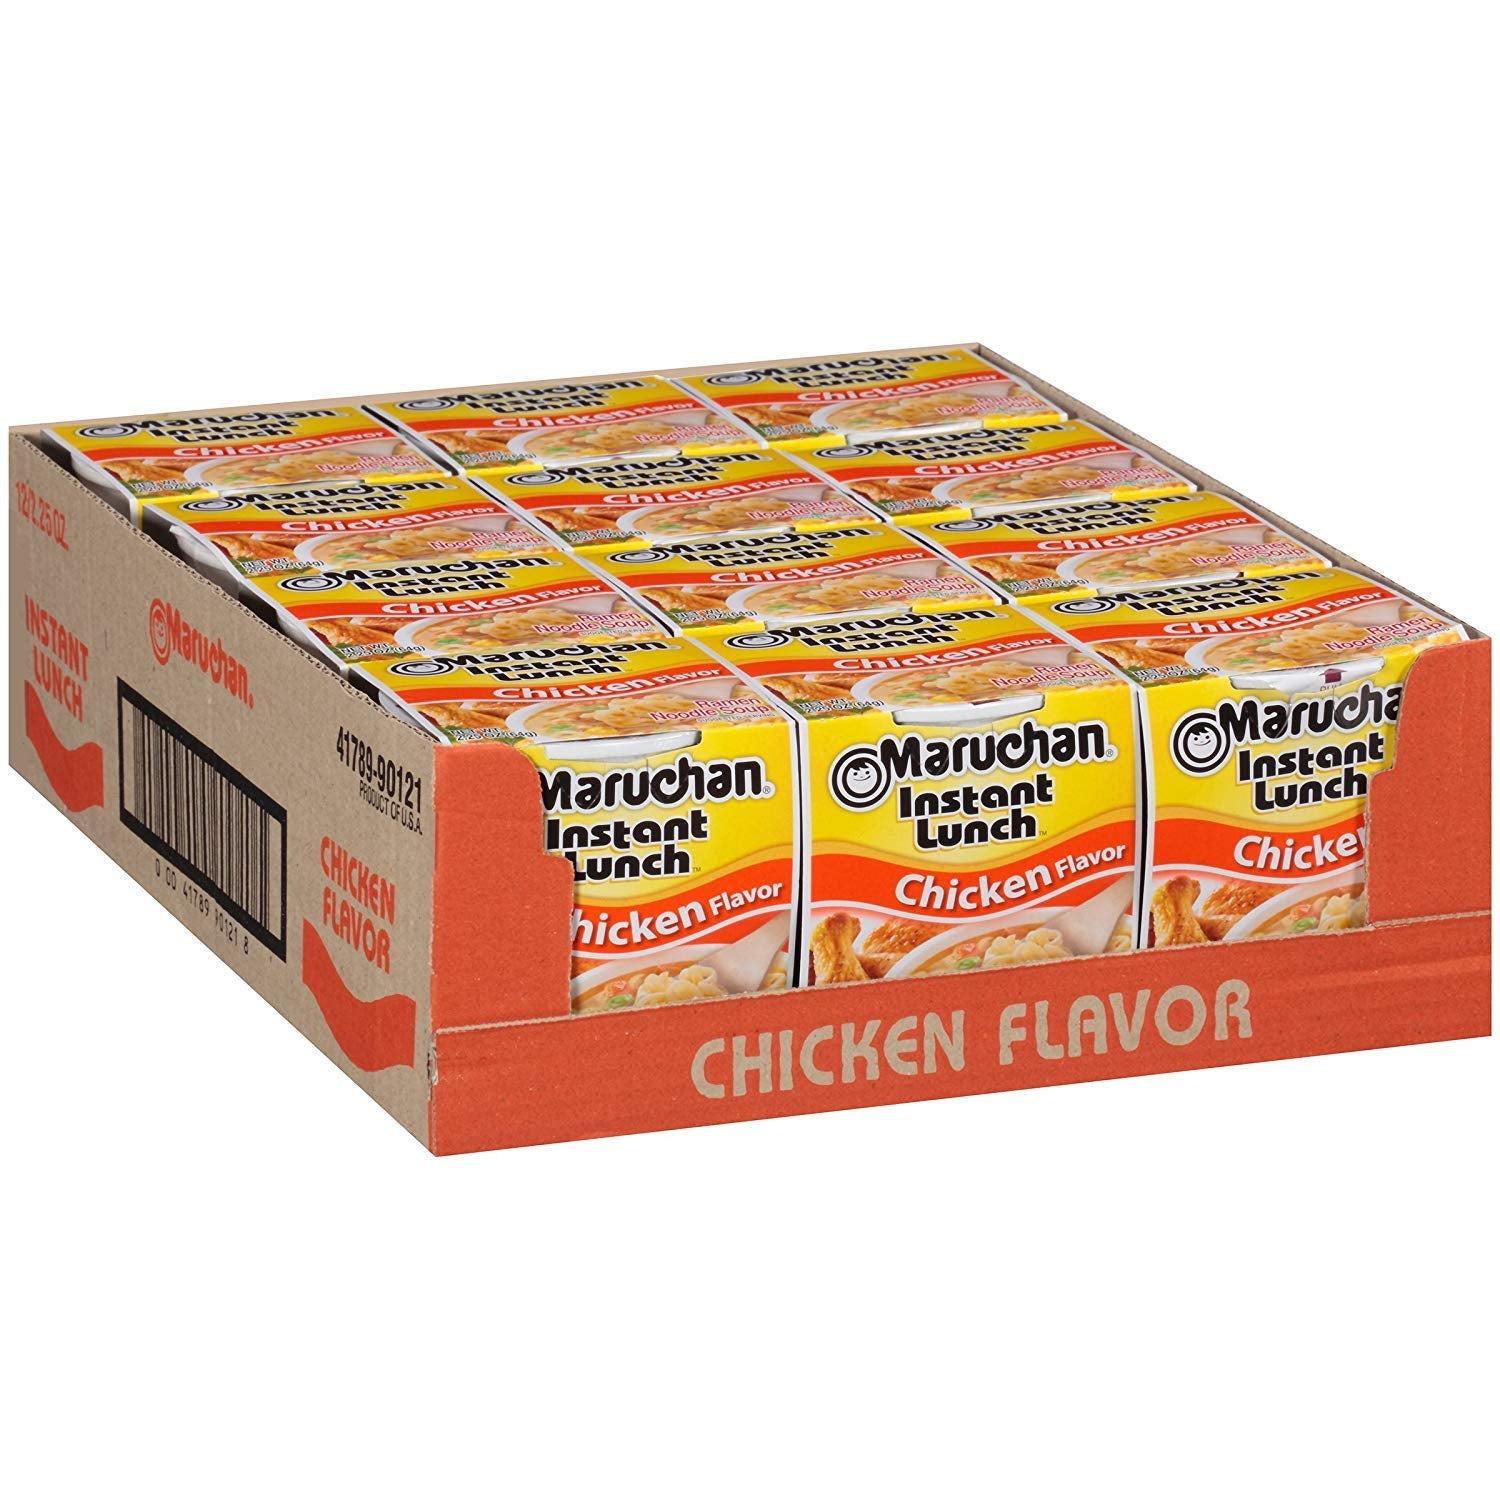 Maruchan Instant Lunch Chicken Flavor 2.25oz (Pack of 12)